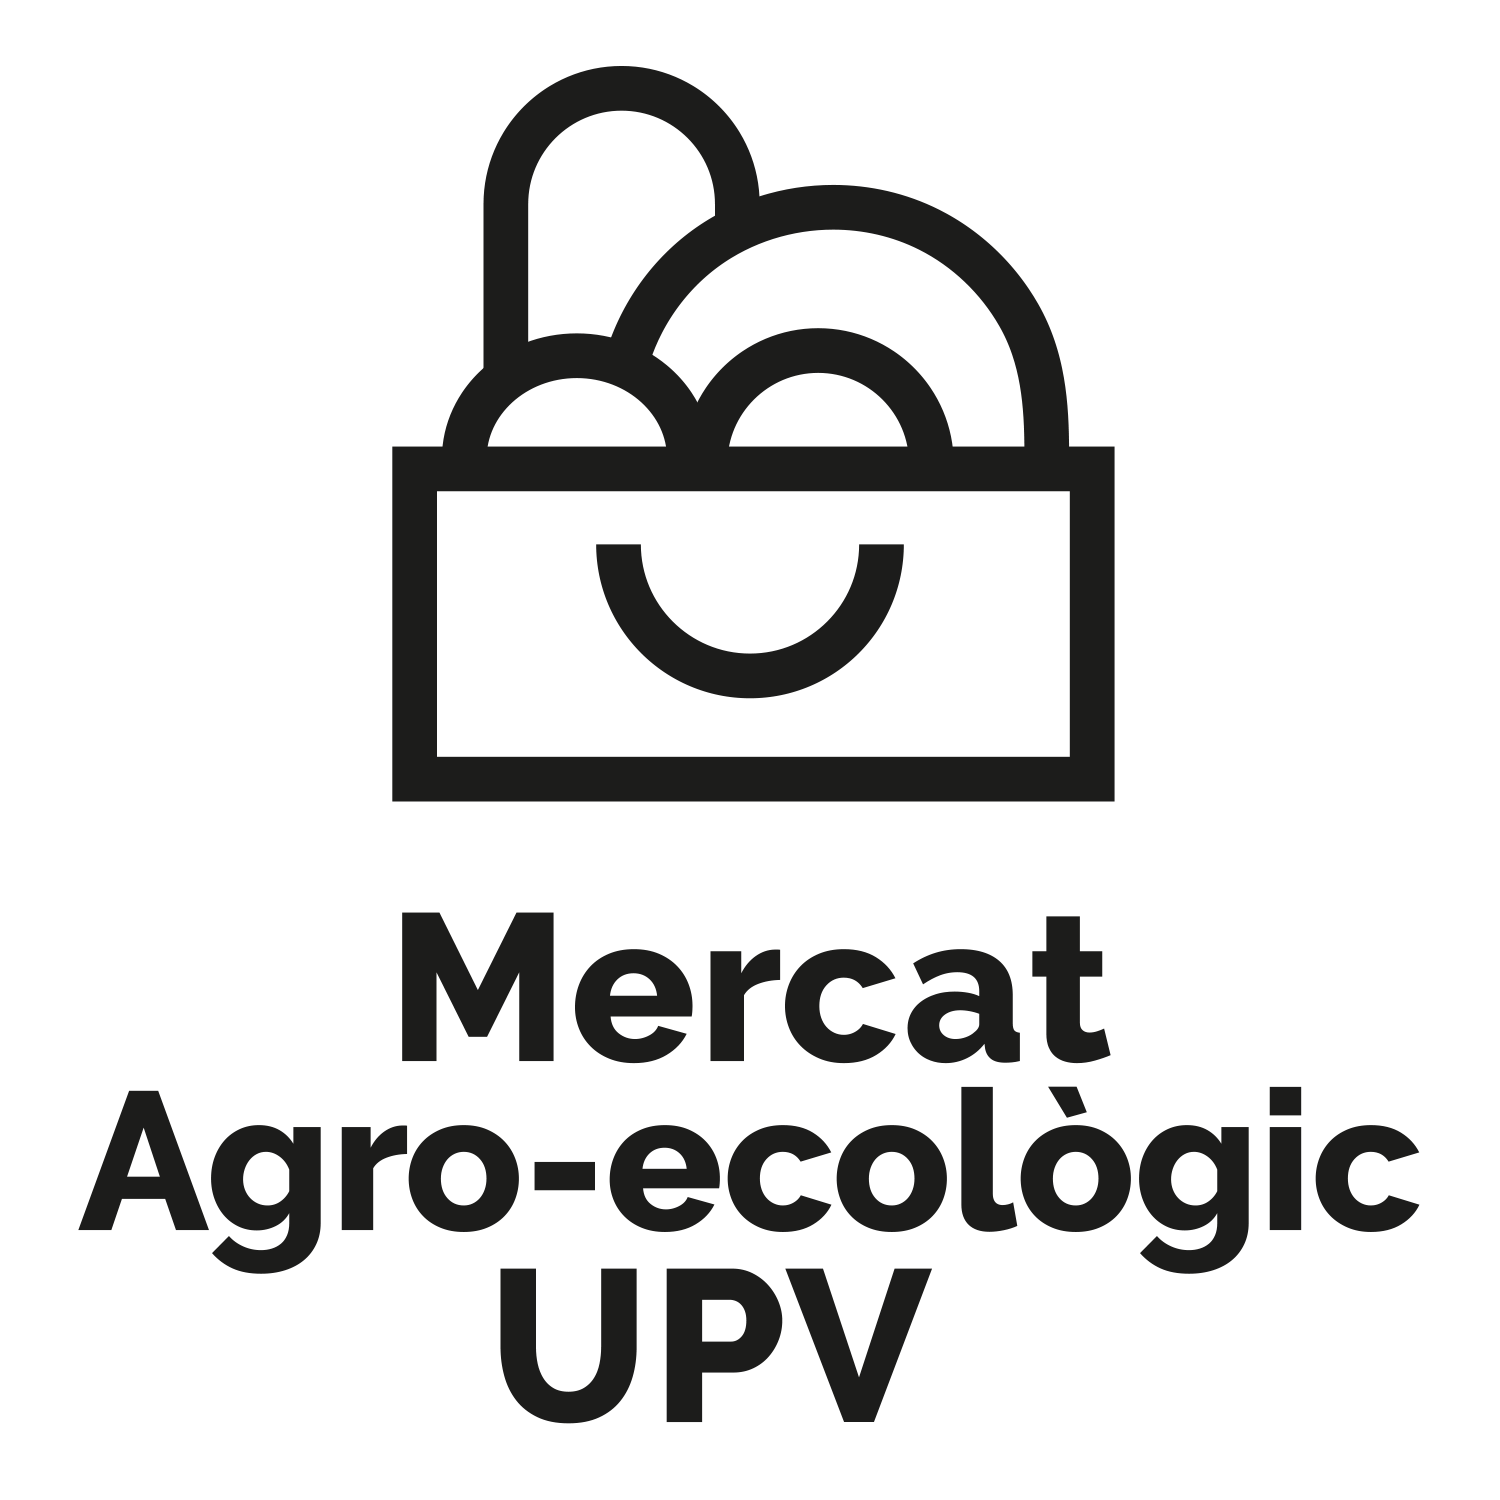 Mercat UPV